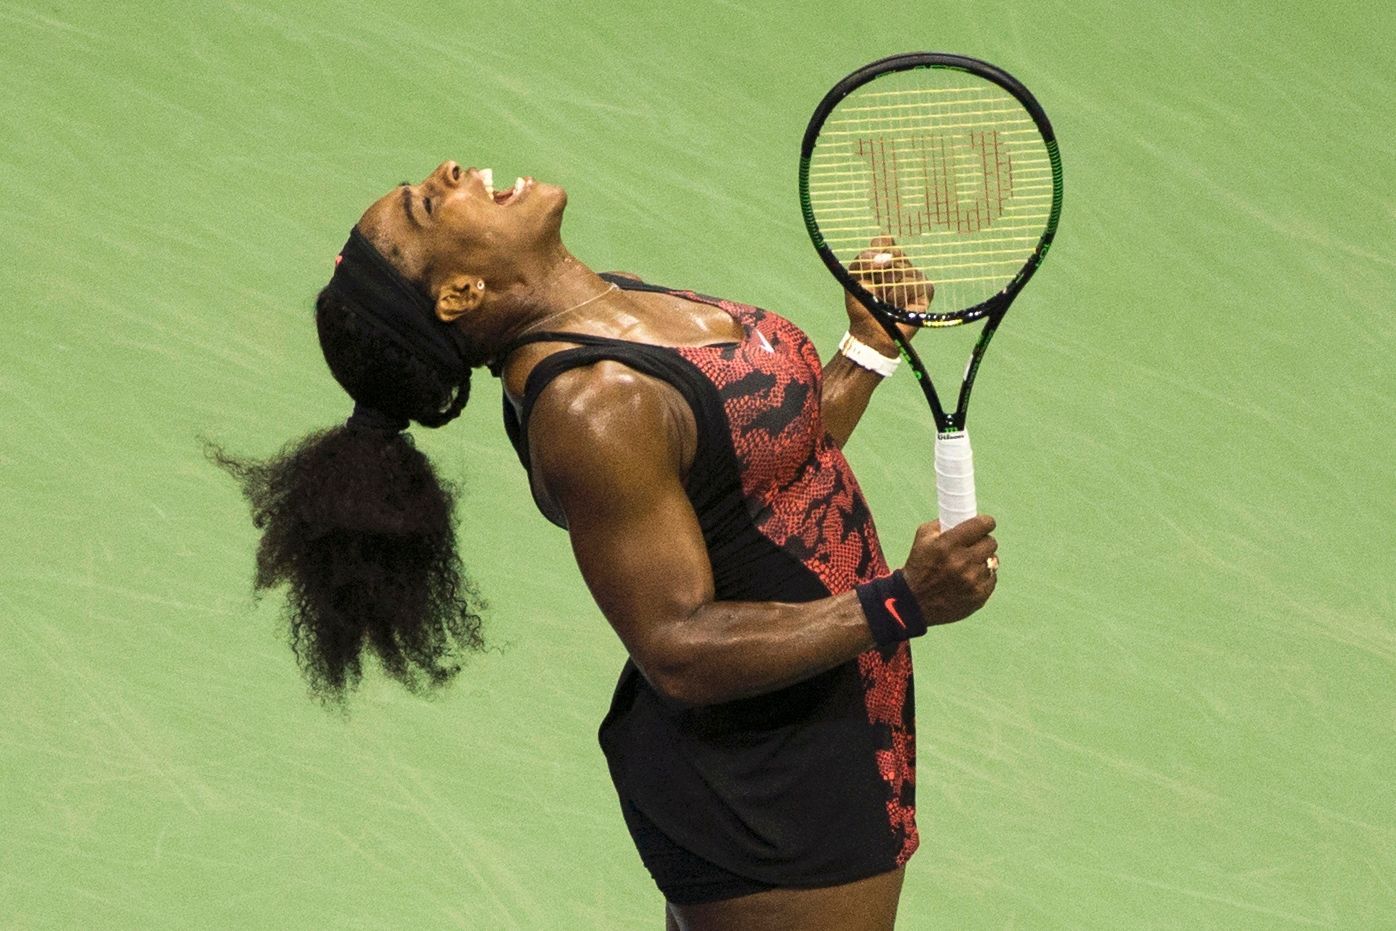 US Open 2015 - Serena Williamsová v zápase proti své sestře Venus Williamsové